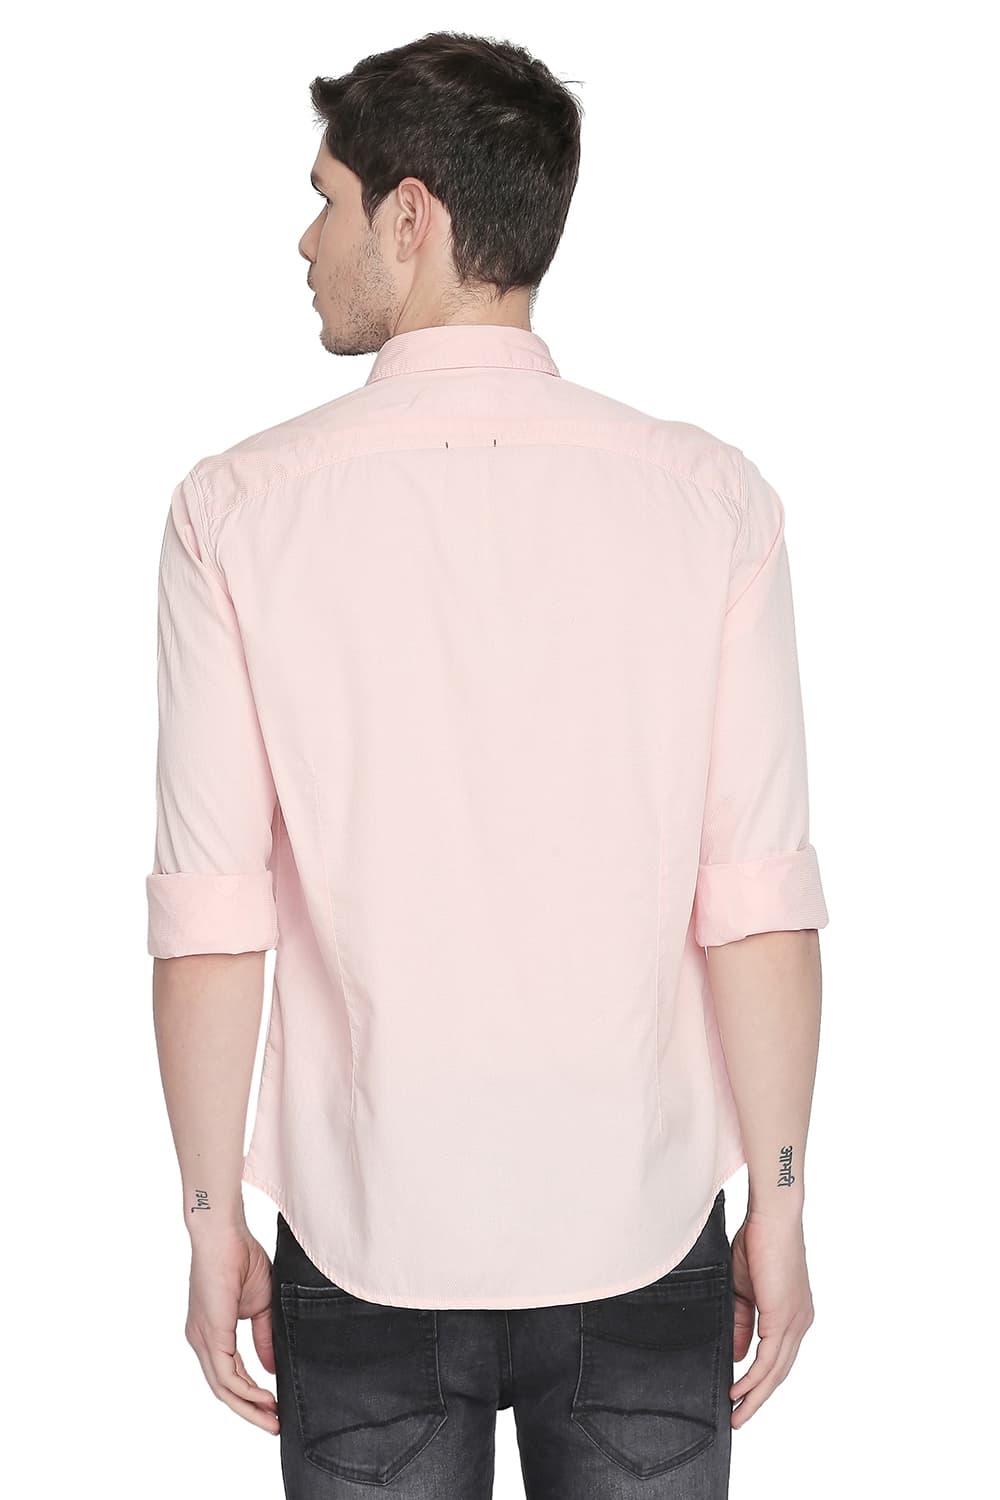 Basics | Basics Slim Fit Peach Melba Structure Shirt